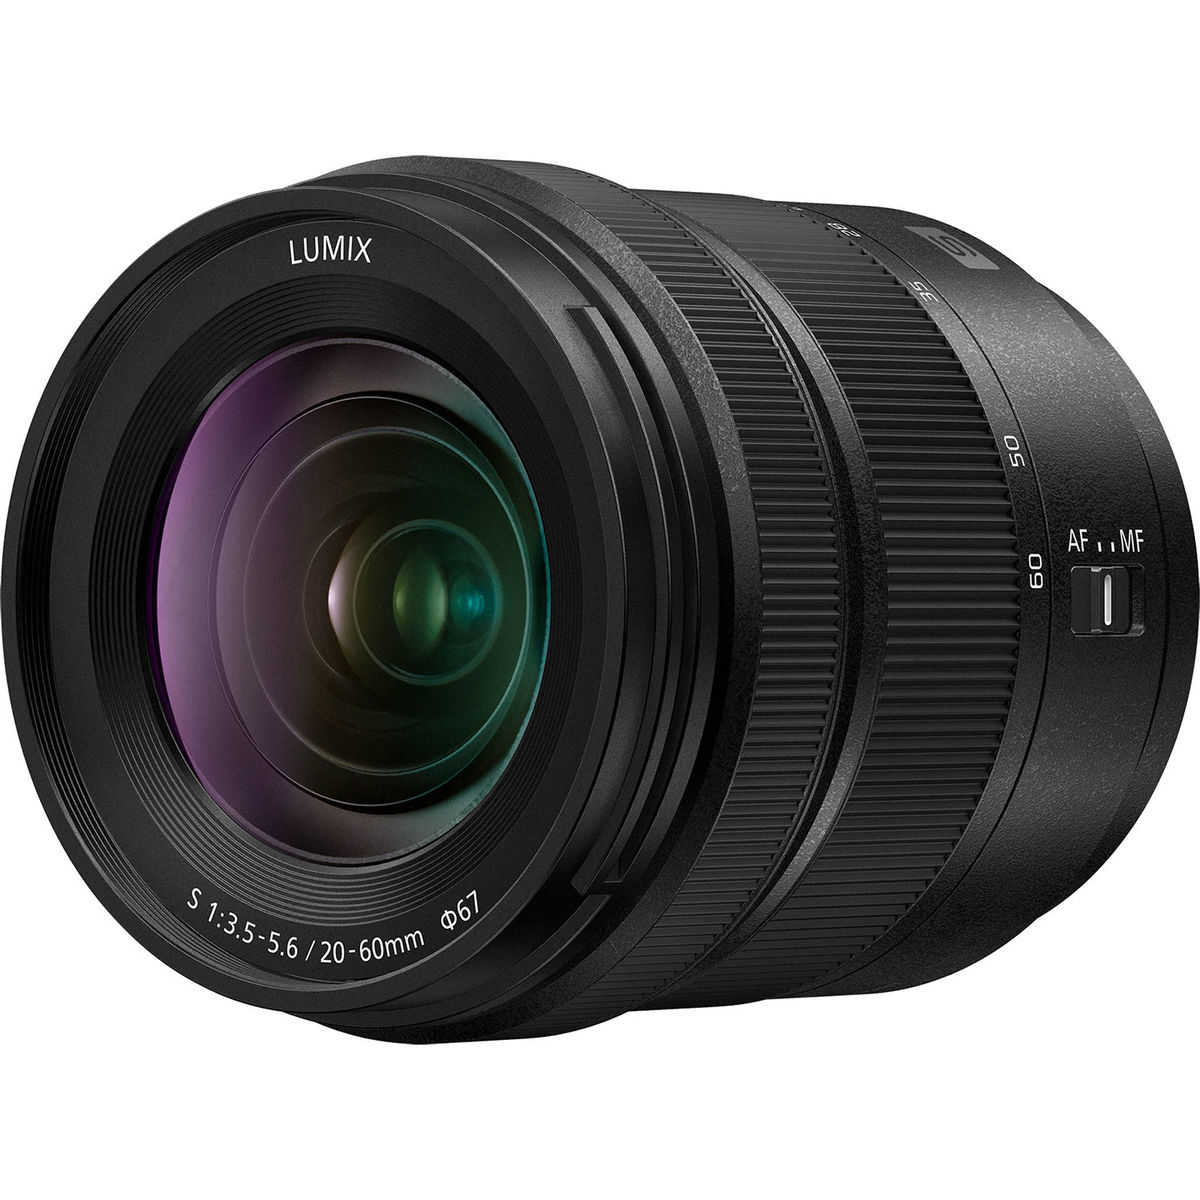 1. Panasonic Lumix S 20-60mm F3.5-5.6 (kit lens)